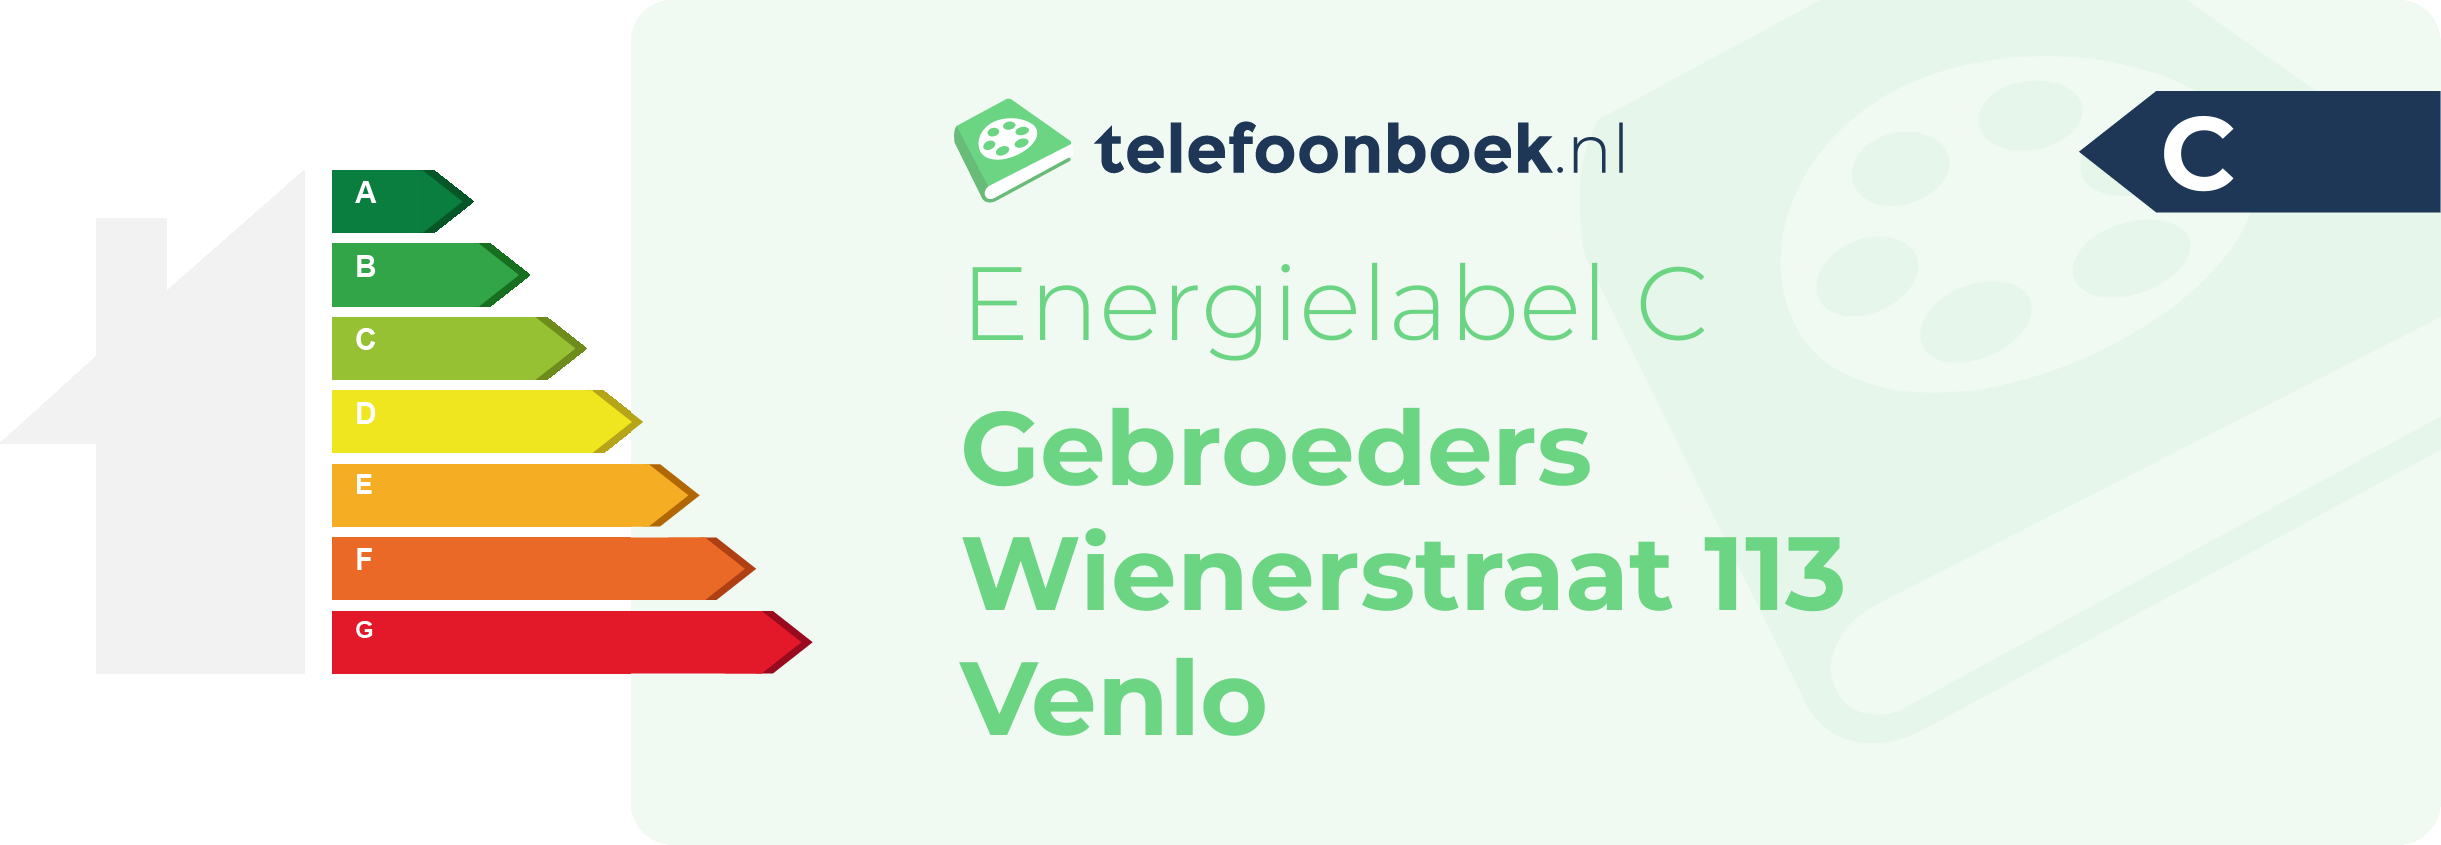 Energielabel Gebroeders Wienerstraat 113 Venlo